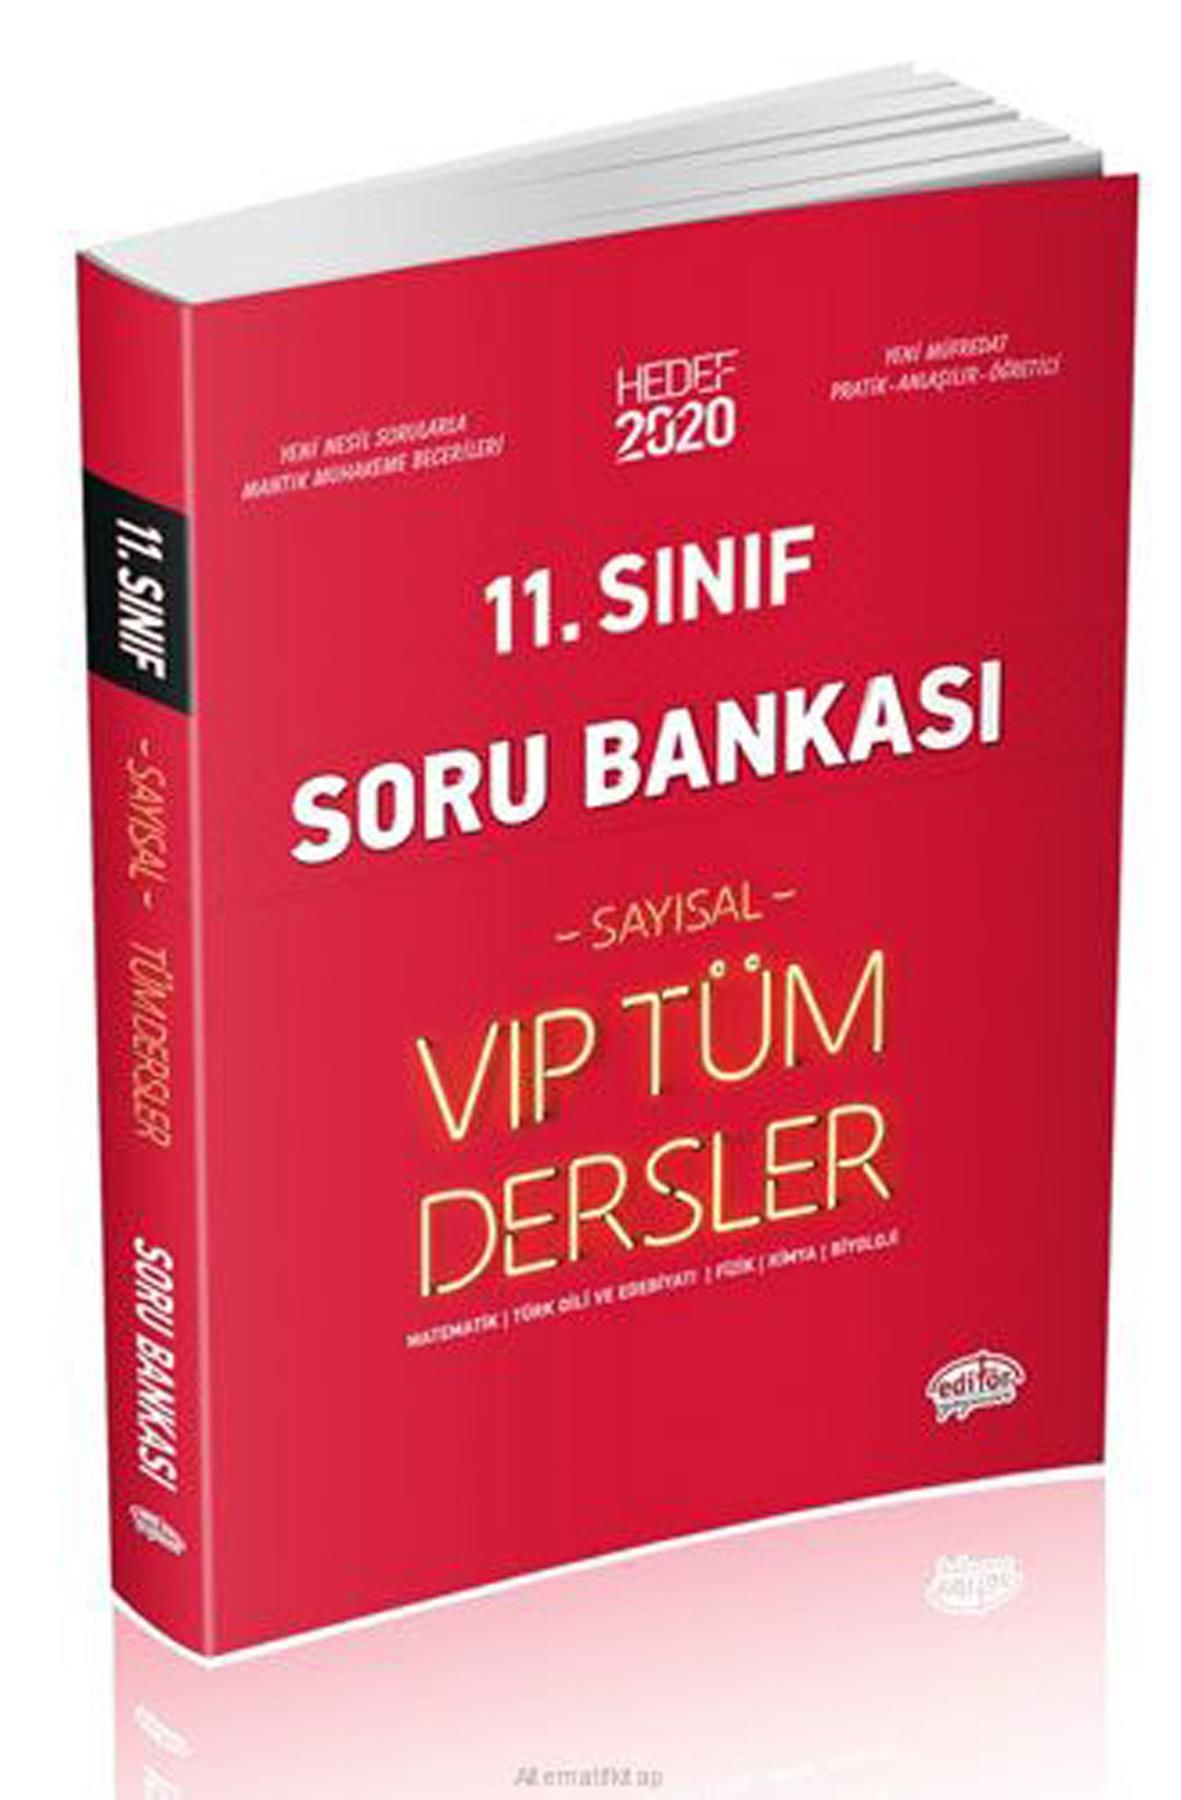 Editör 11. Sınıf VIP Tüm Dersler Sayısal Soru Bankası